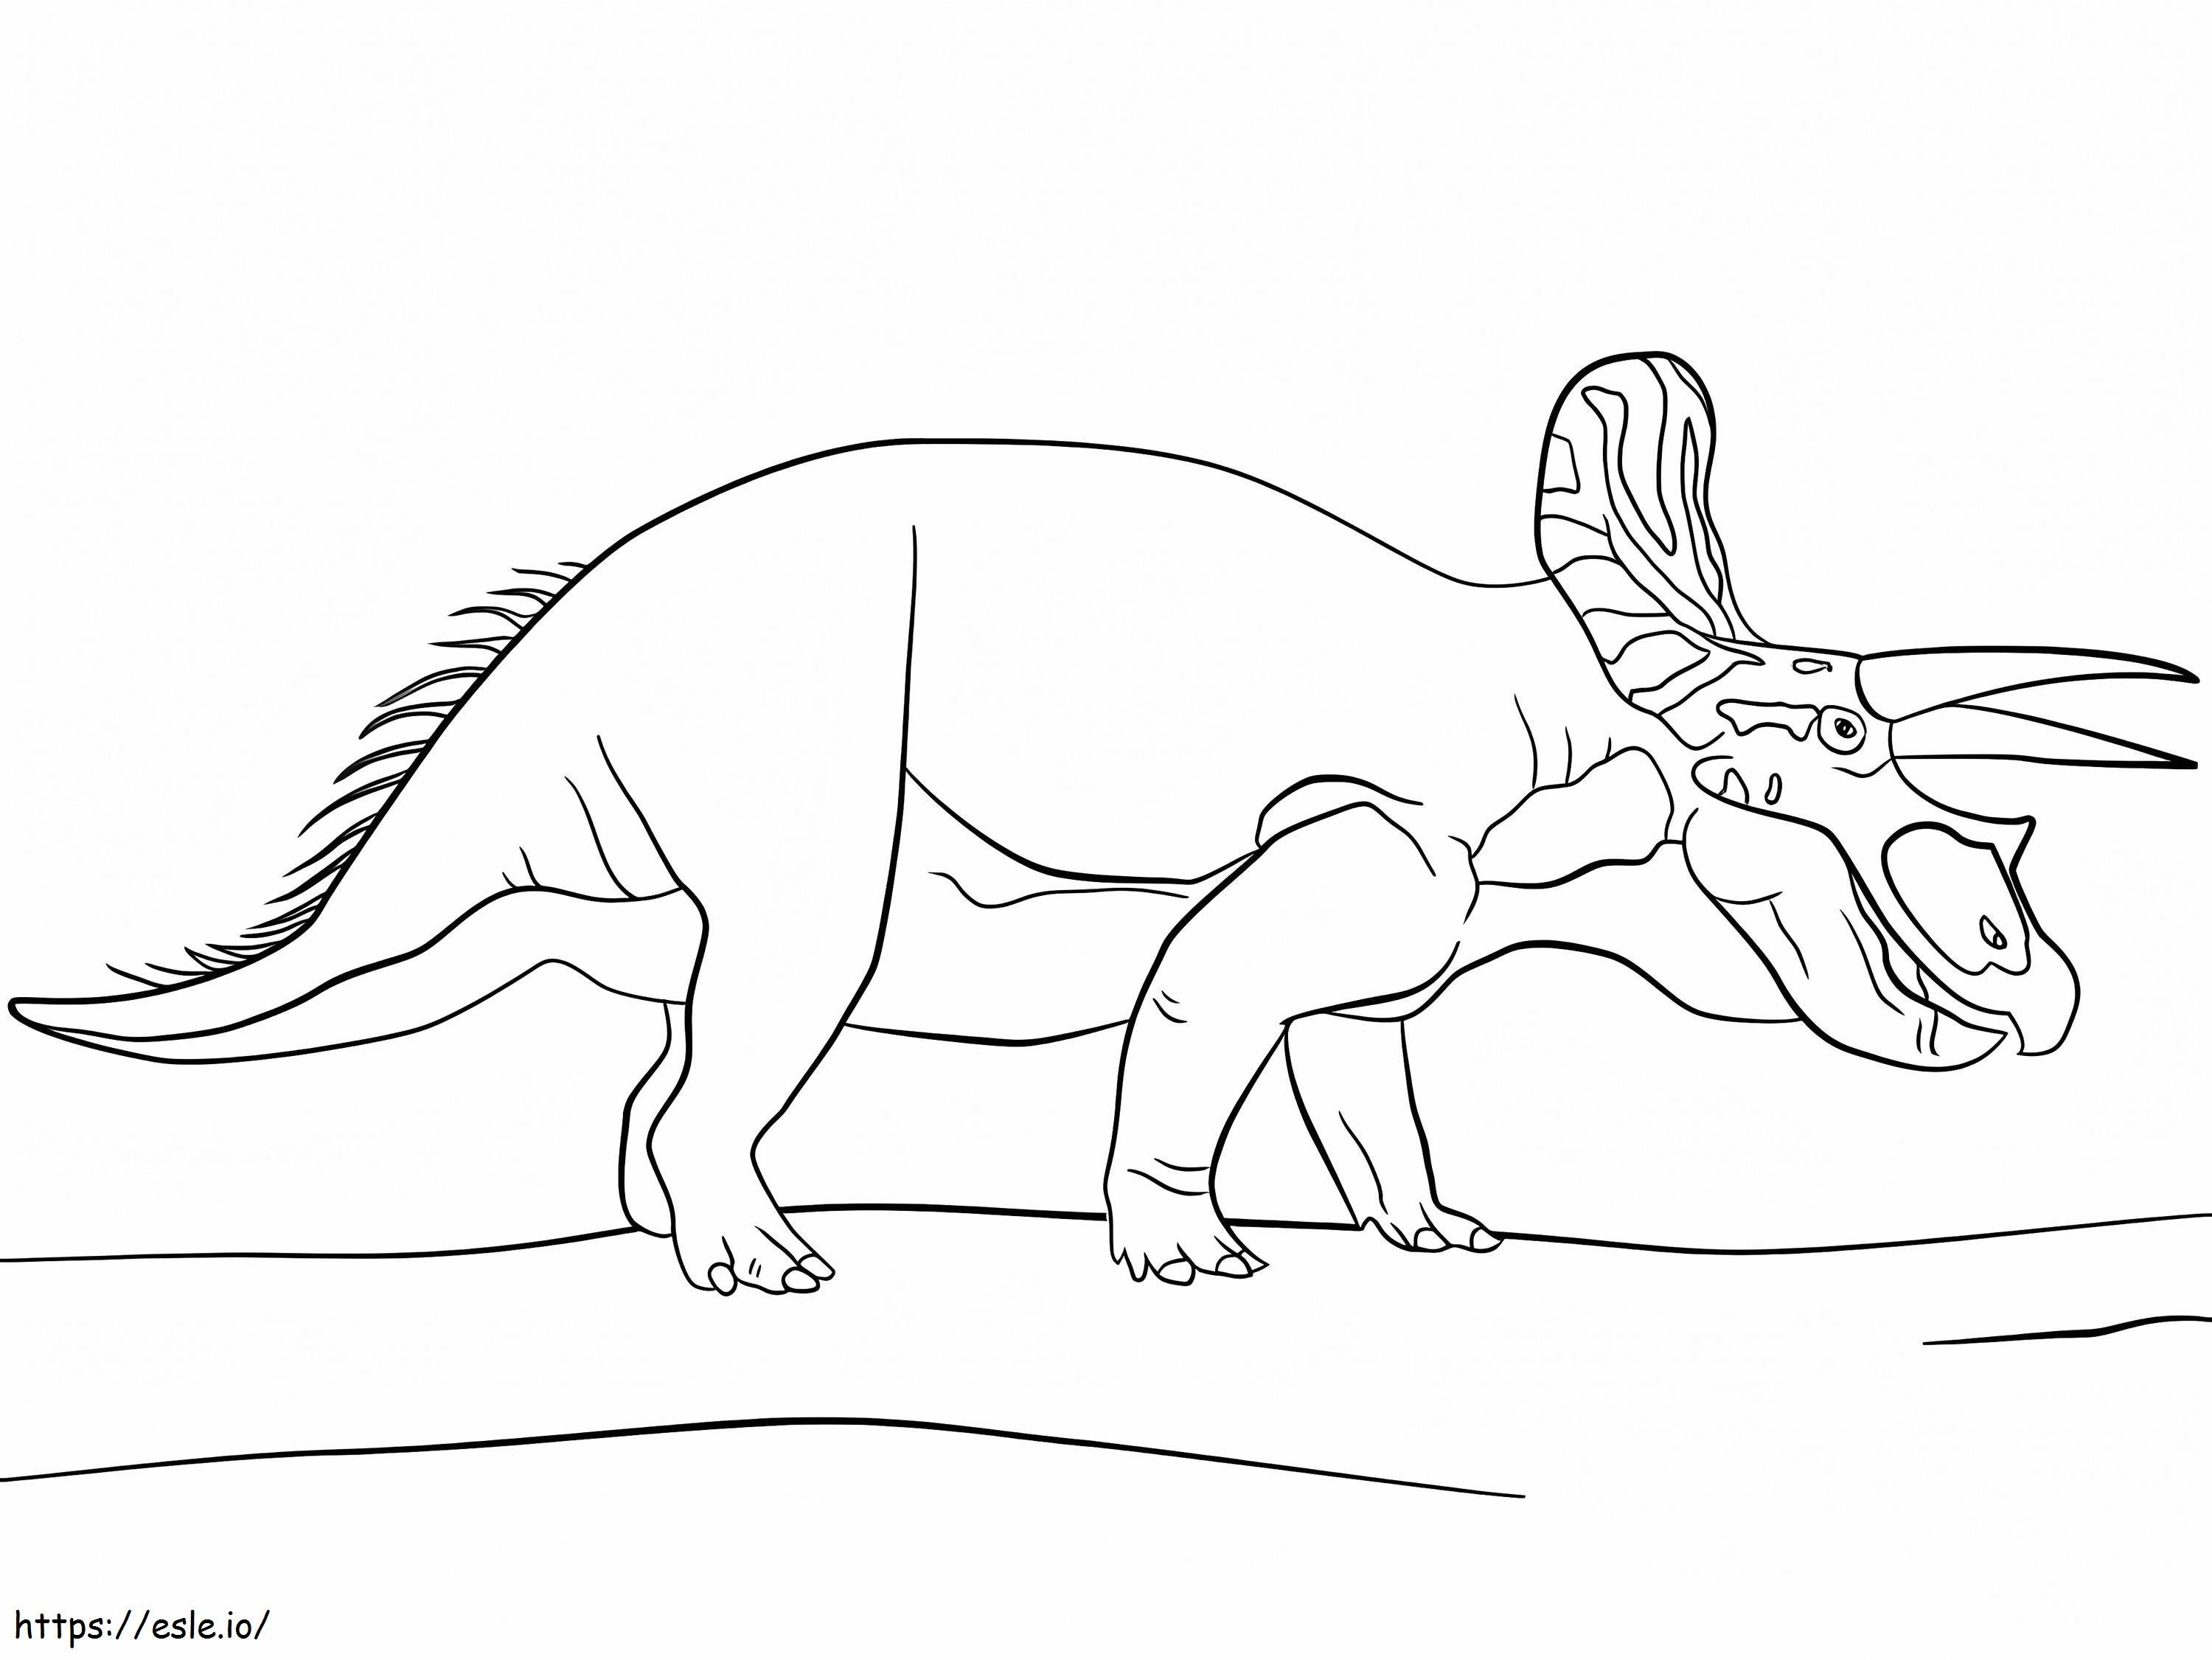 Dibujo de Triceratops de Jurassic Park para colorear para colorear